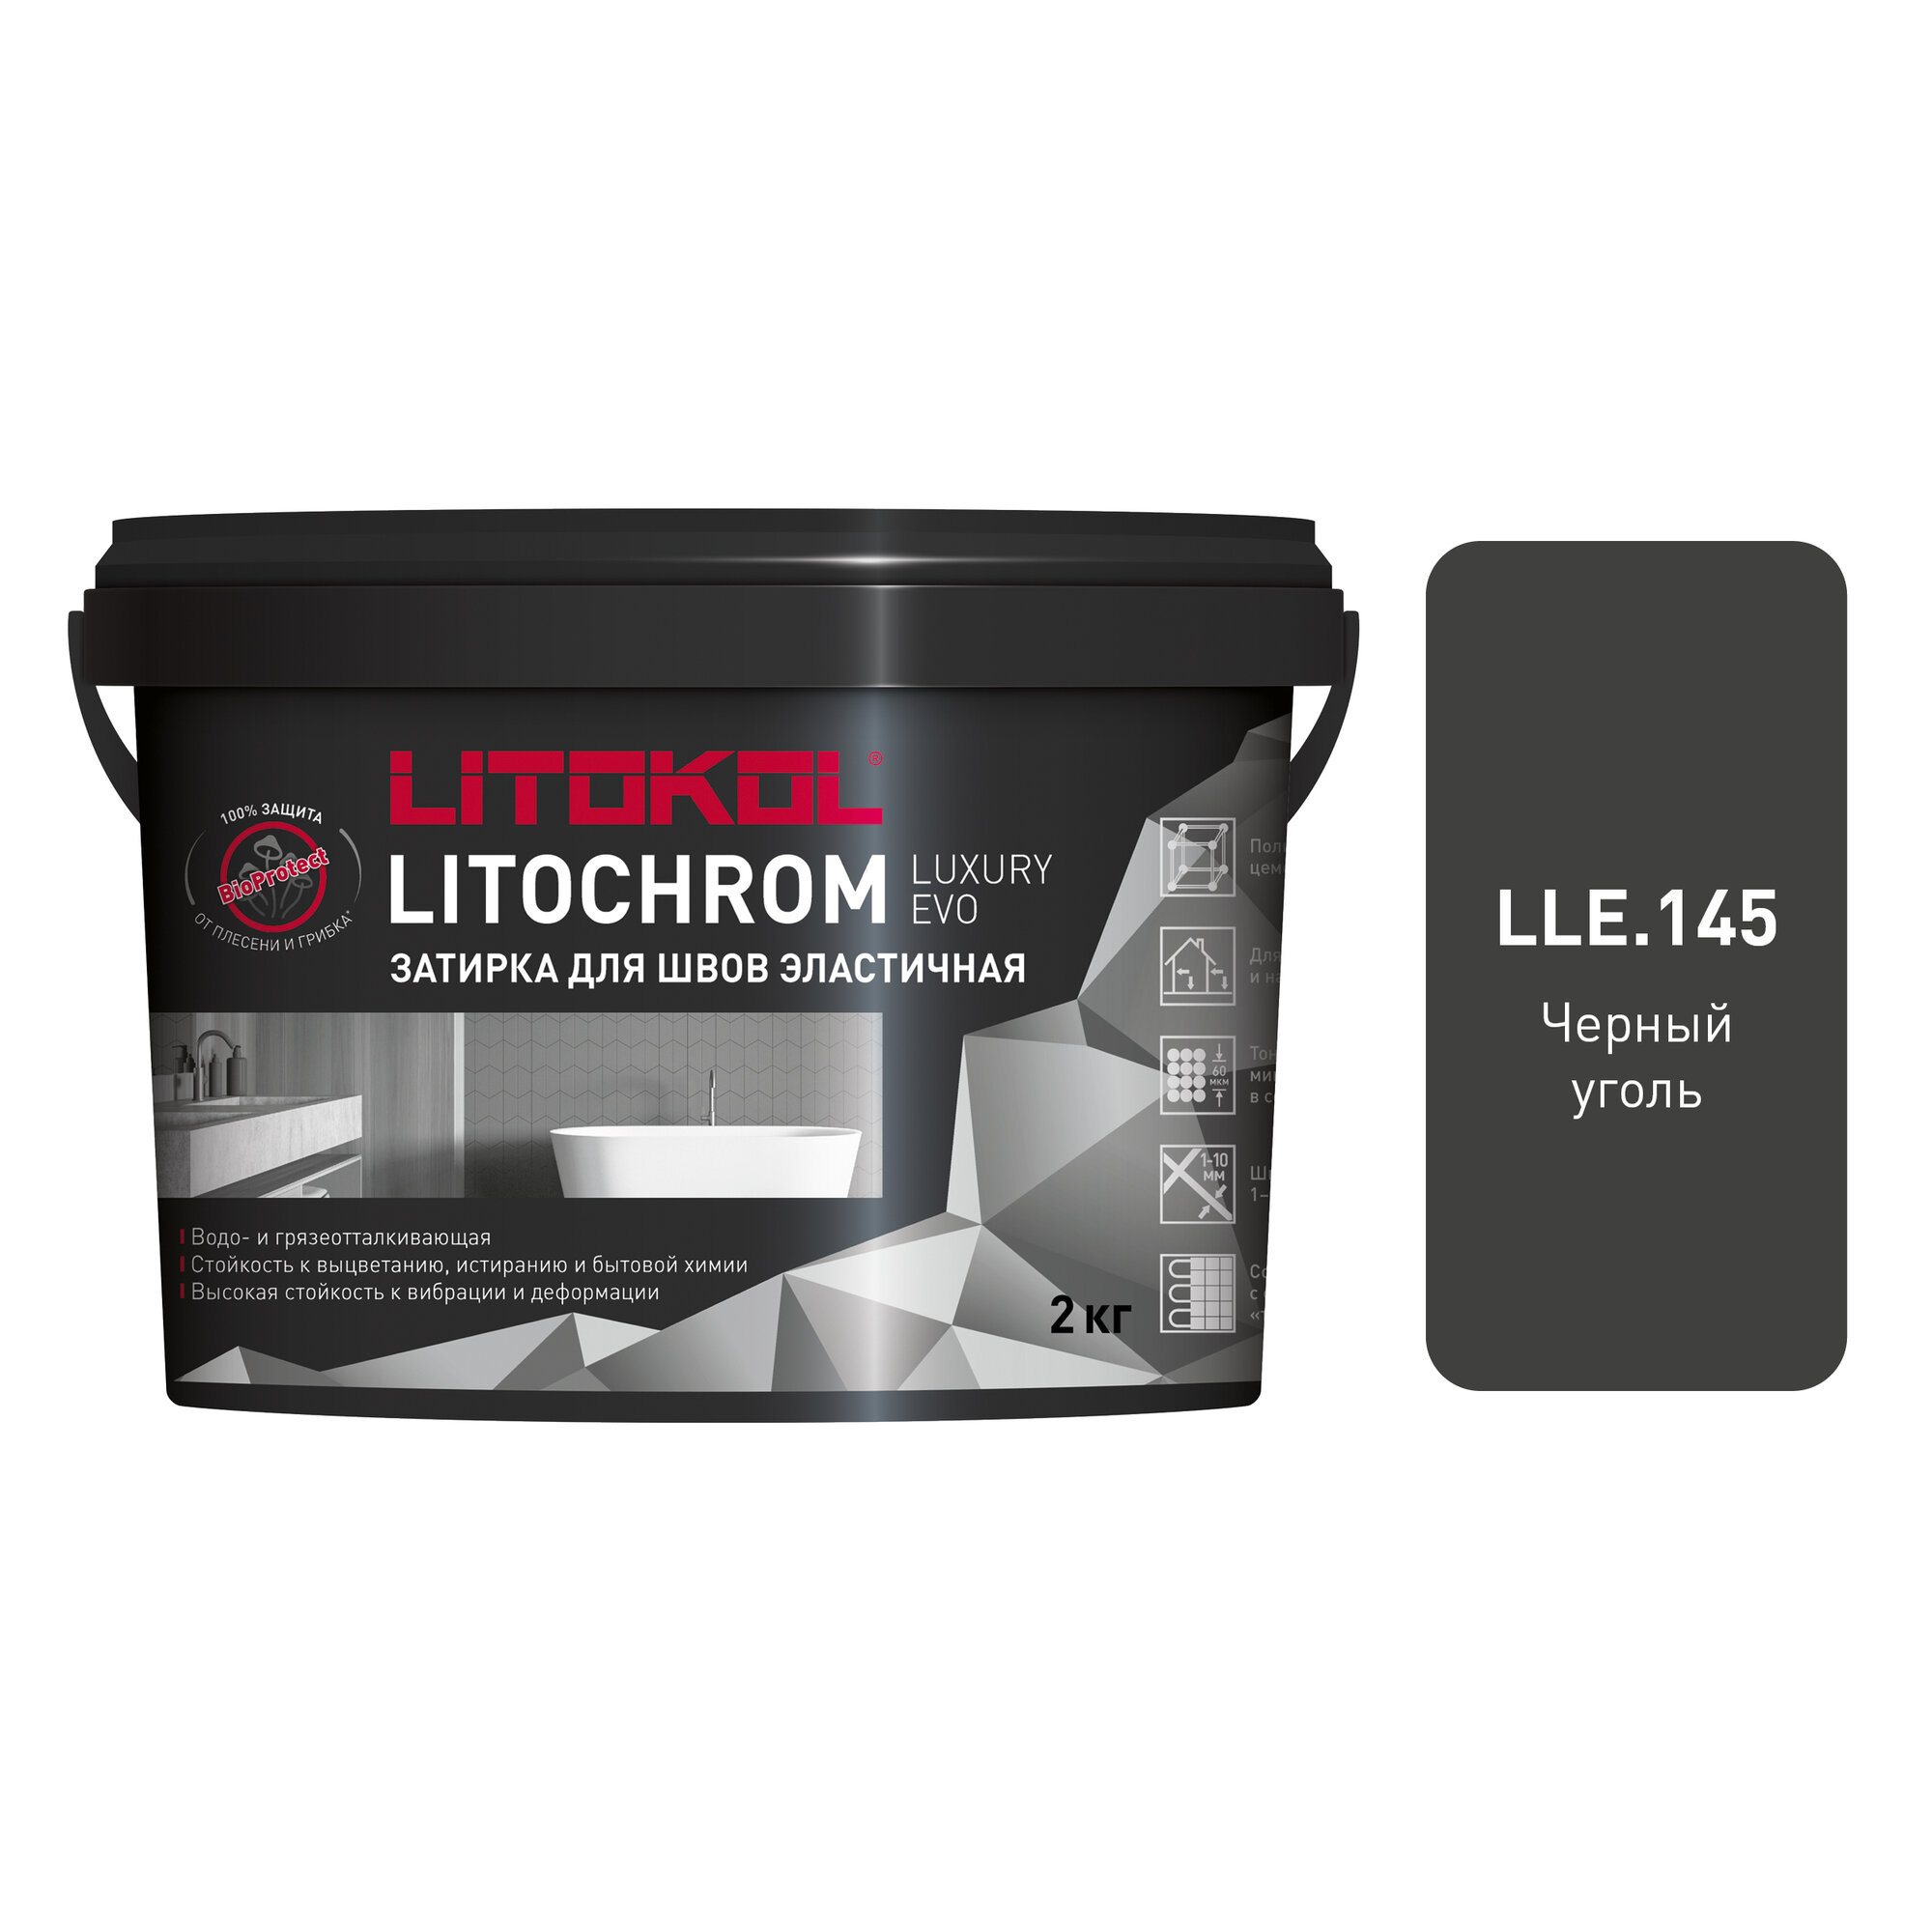 Затирка цементная LITOKOL LITOCHROM LUXURY EVO LLE 145, цвет черный уголь, 2 кг